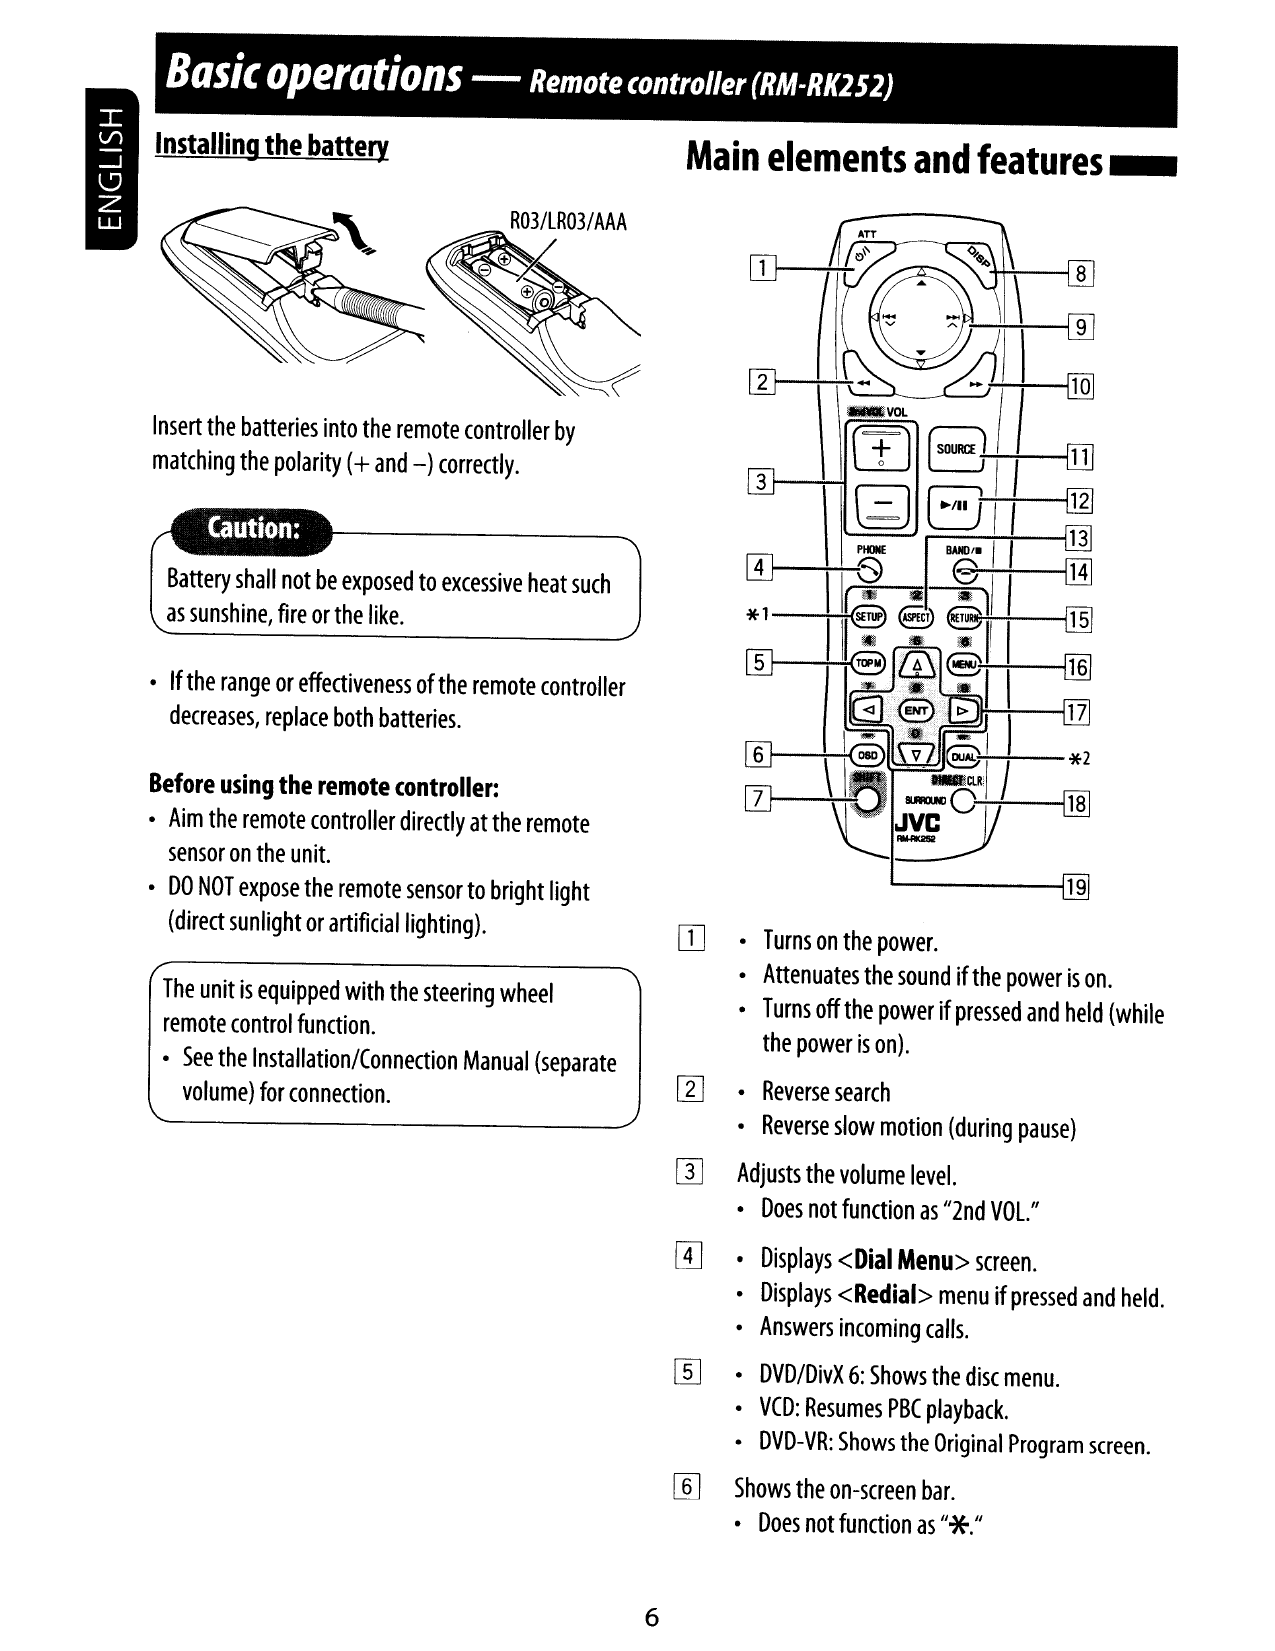 Car radio user manual автомагнитола инструкция на русском языке